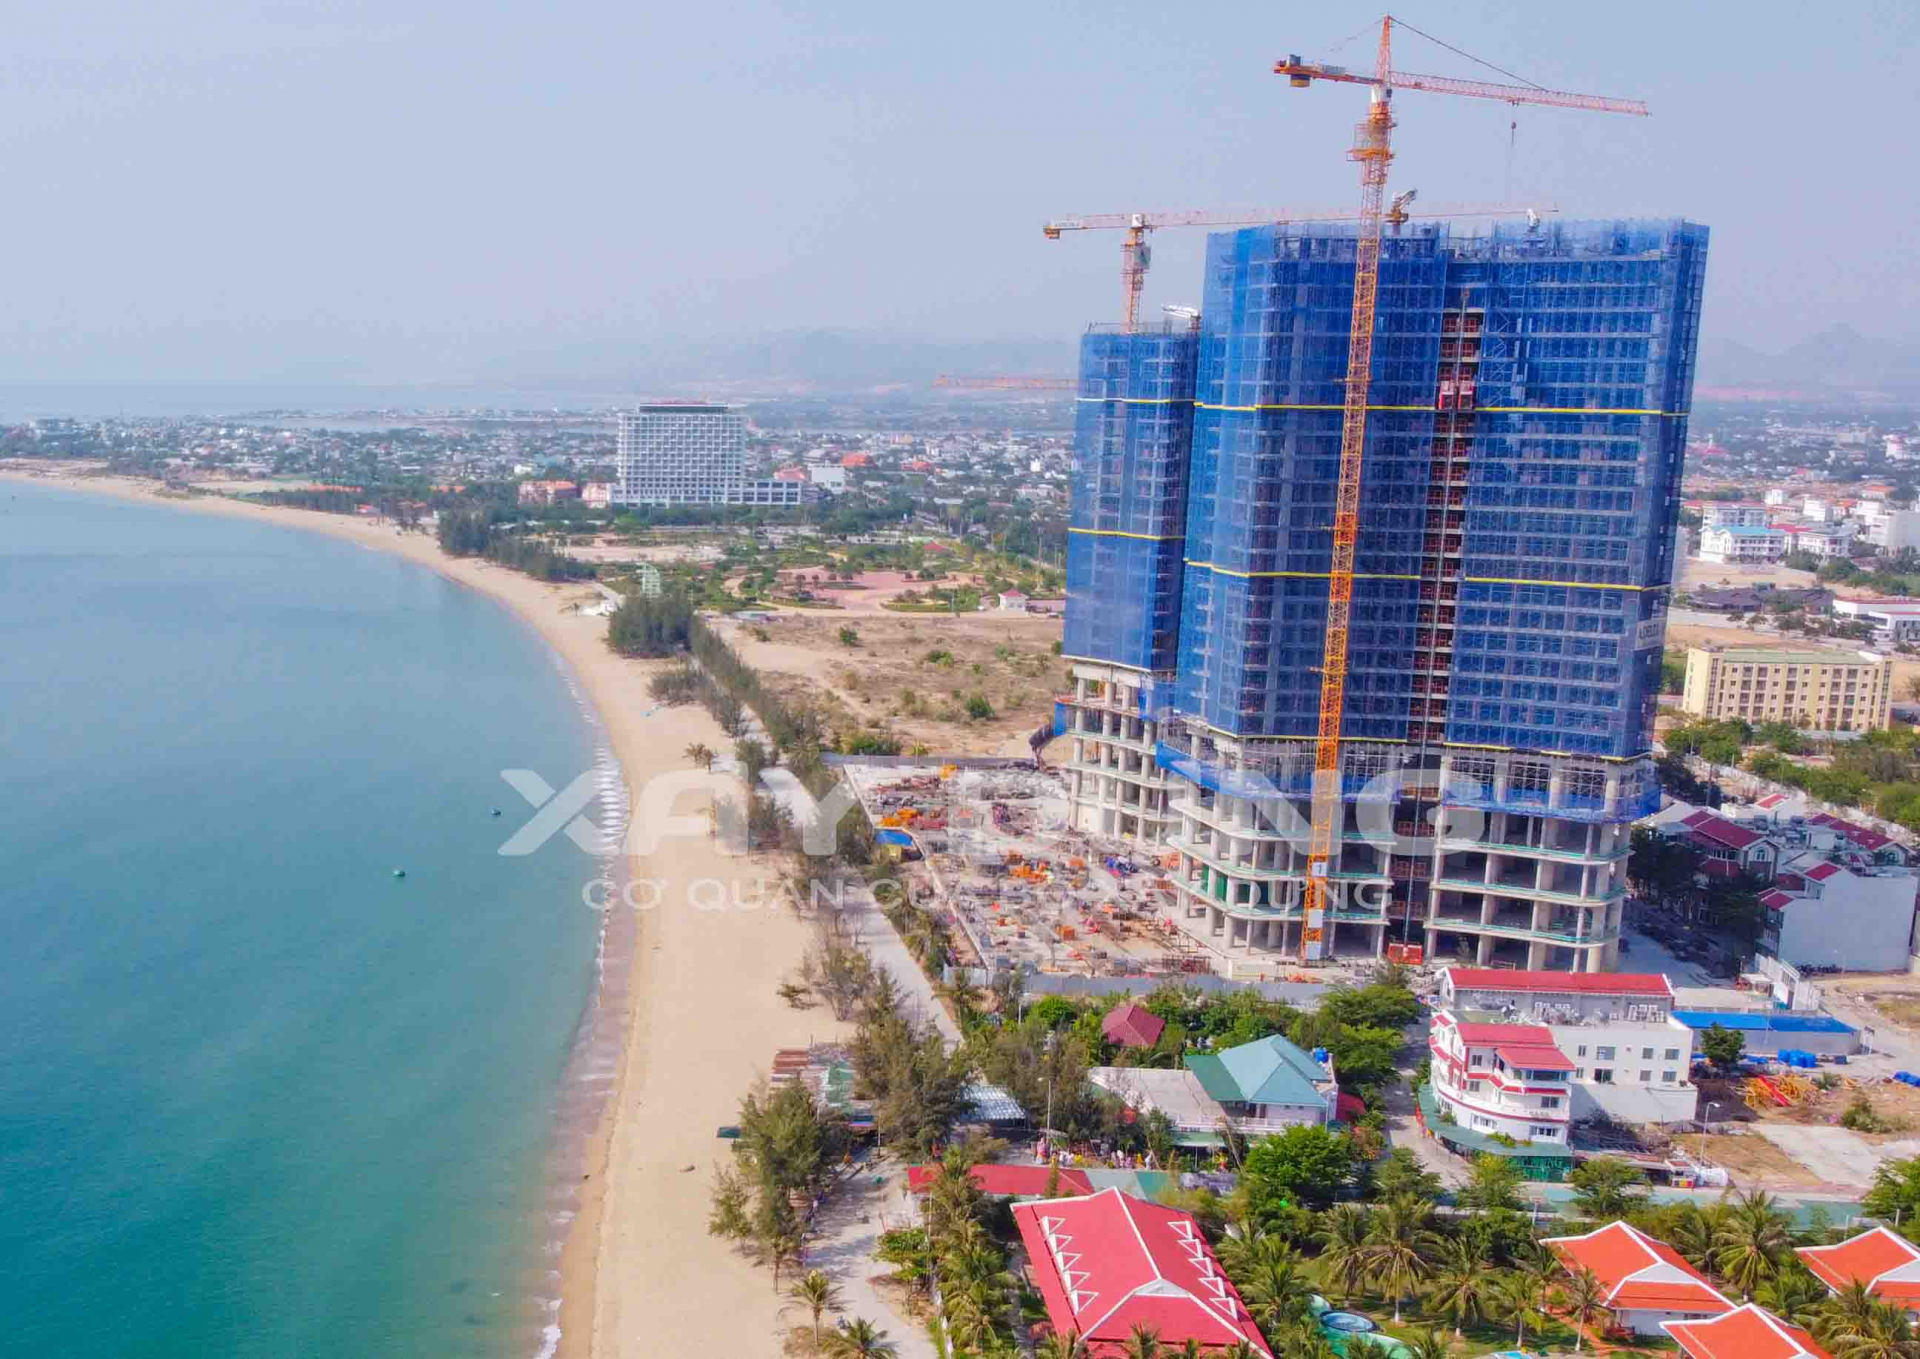 Viết tiếp bài những công trình đang chiếm trọn bãi biển Ninh Thuận: Có một dự án “khủng” từng dính nhiều sai phạm